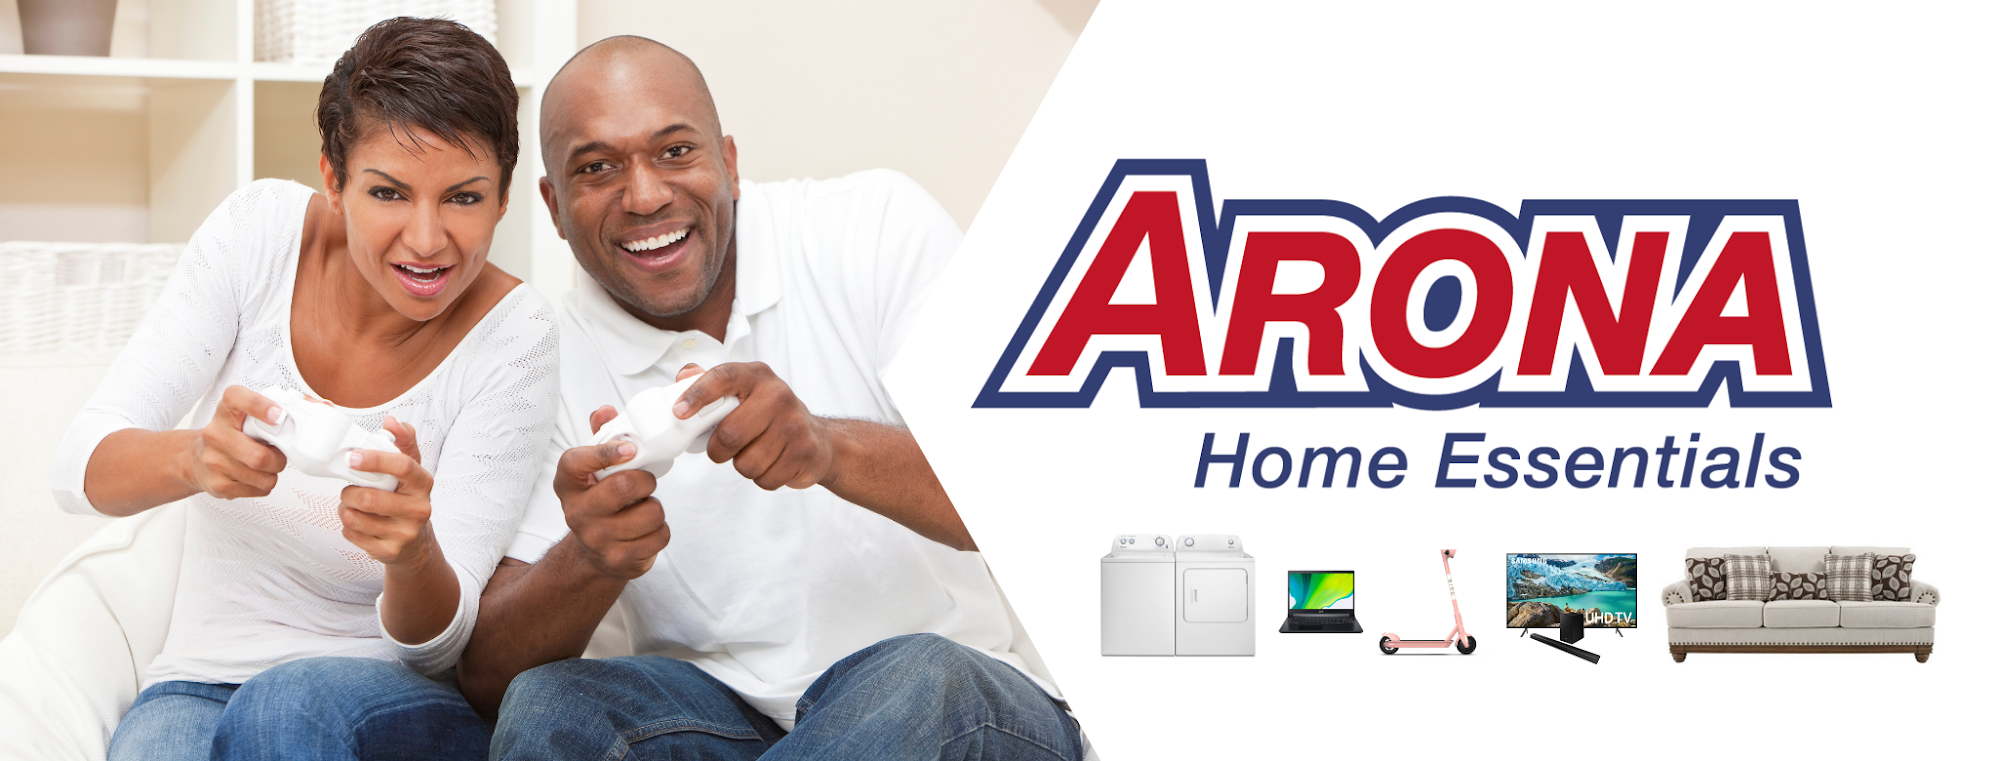 Arona Home Essentials Jefferson City